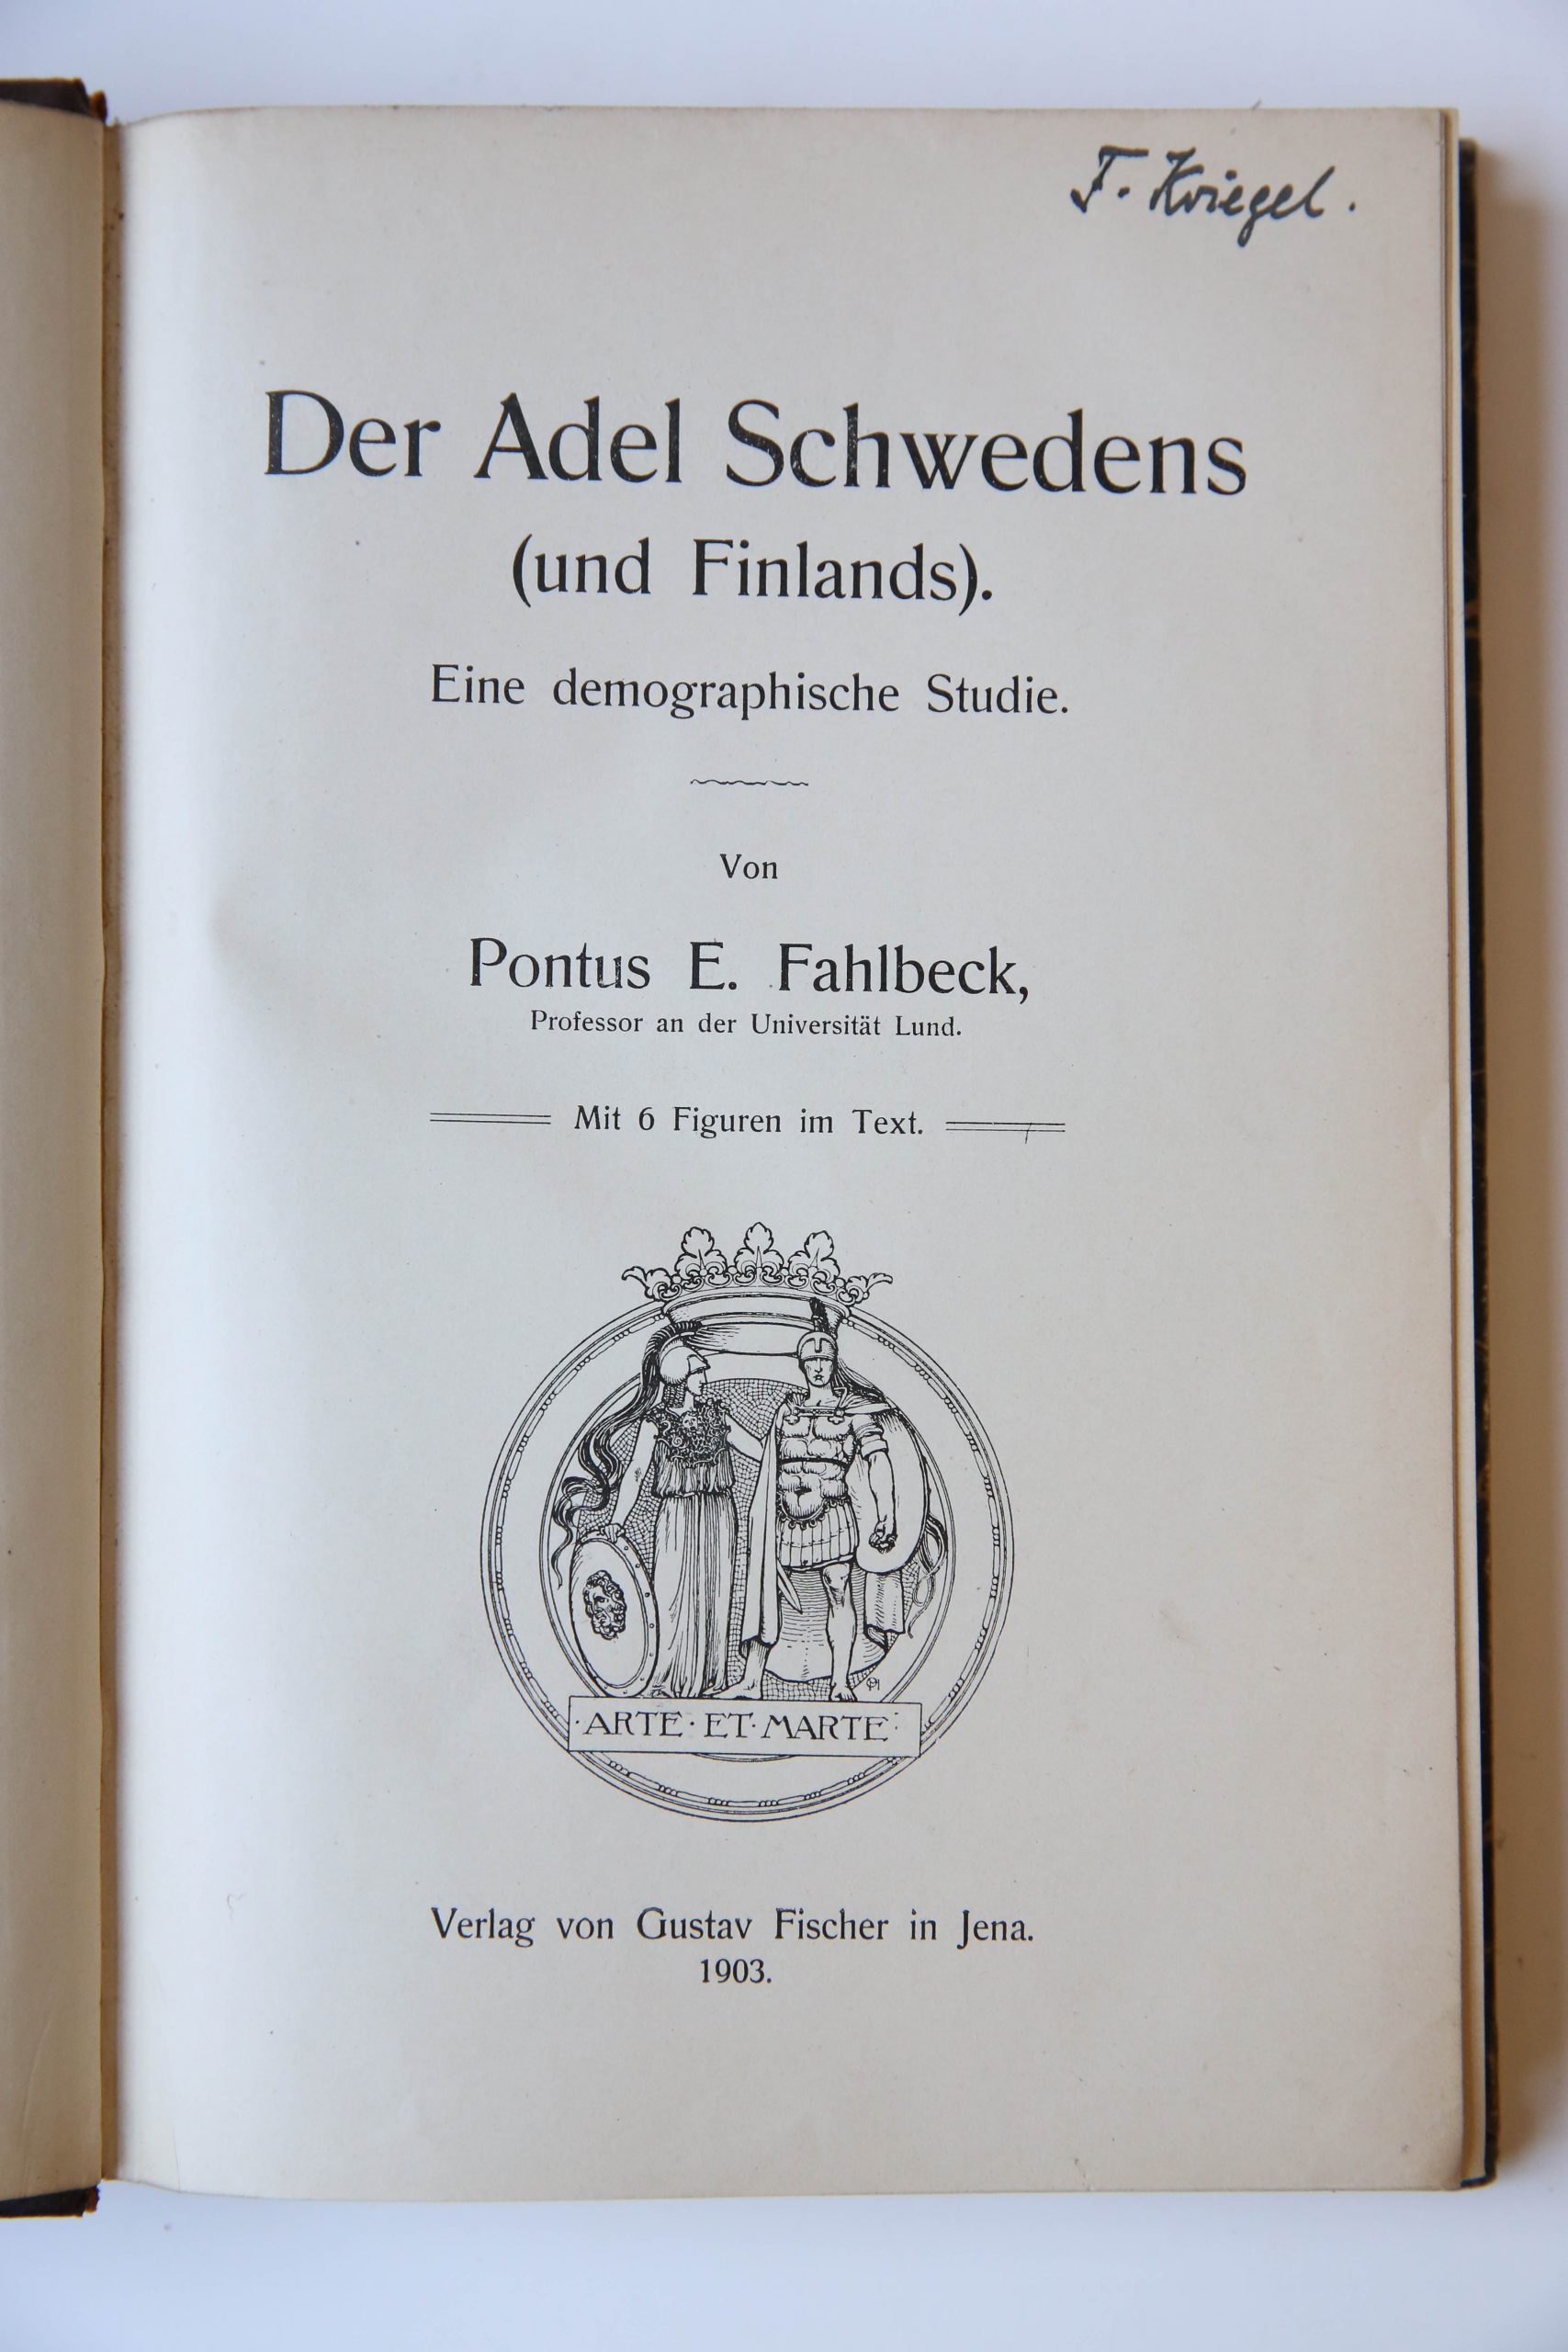 [Heraldry and Geneology Sweden, Scandinavia] Der Adel Schwedens (und Finlands). Eine demographische Studie. Jena 1903, 361 p.